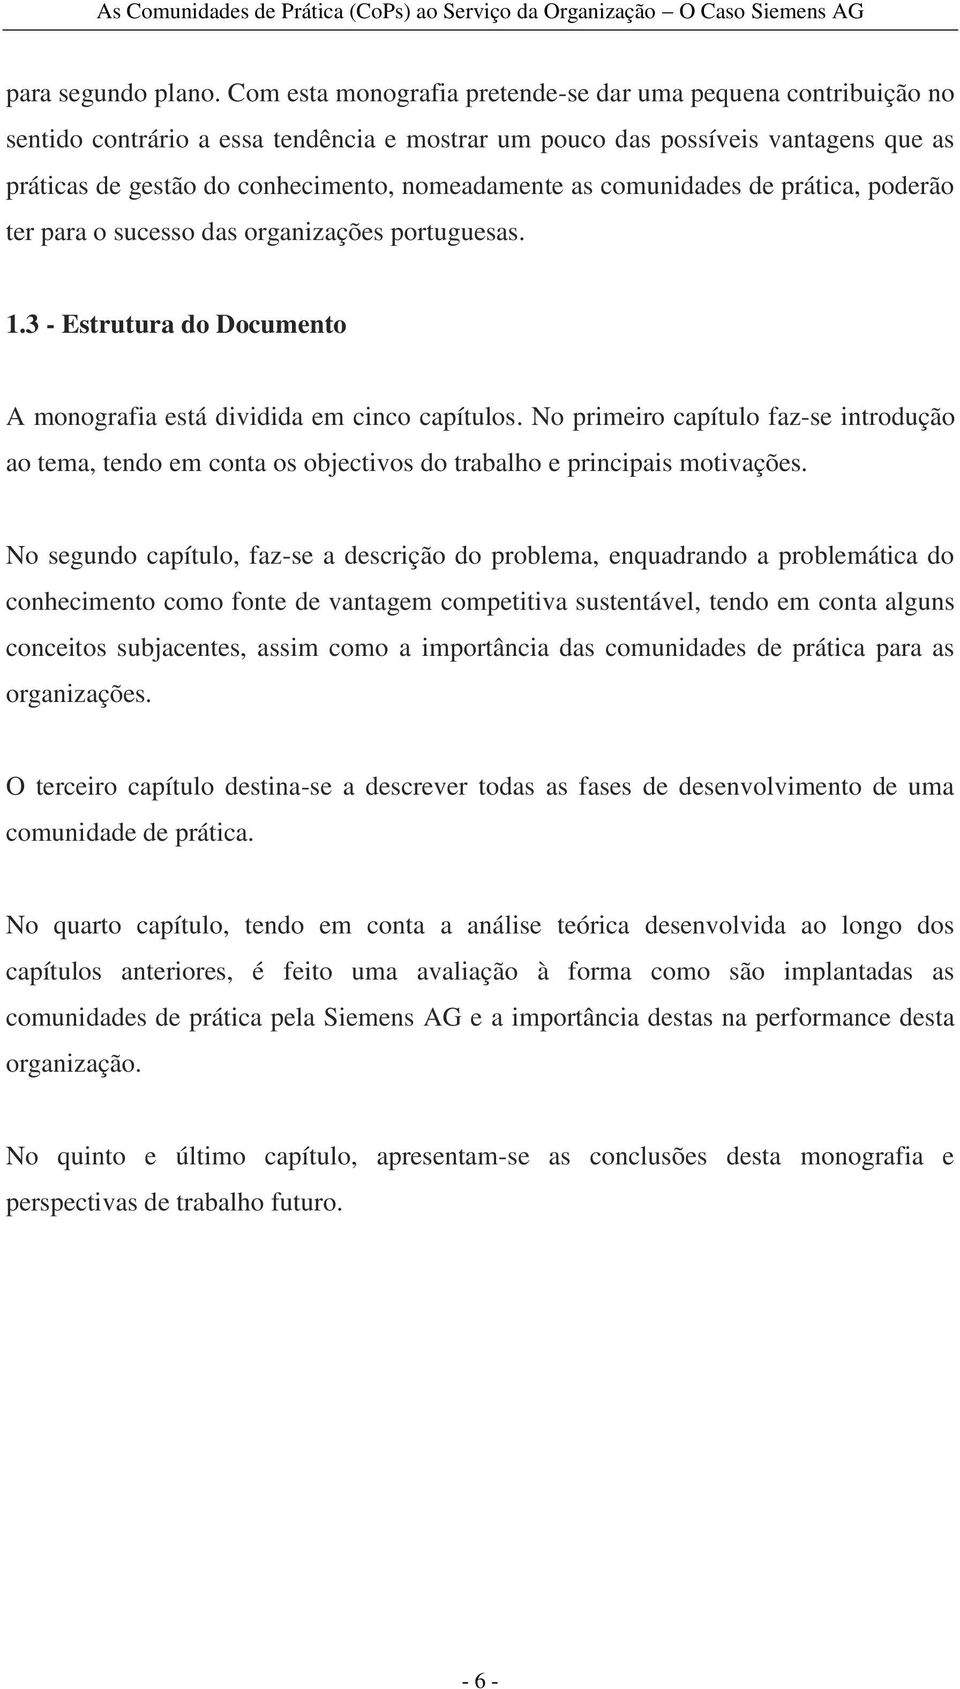 as comunidades de prática, poderão ter para o sucesso das organizações portuguesas. 1.3 - Estrutura do Documento A monografia está dividida em cinco capítulos.